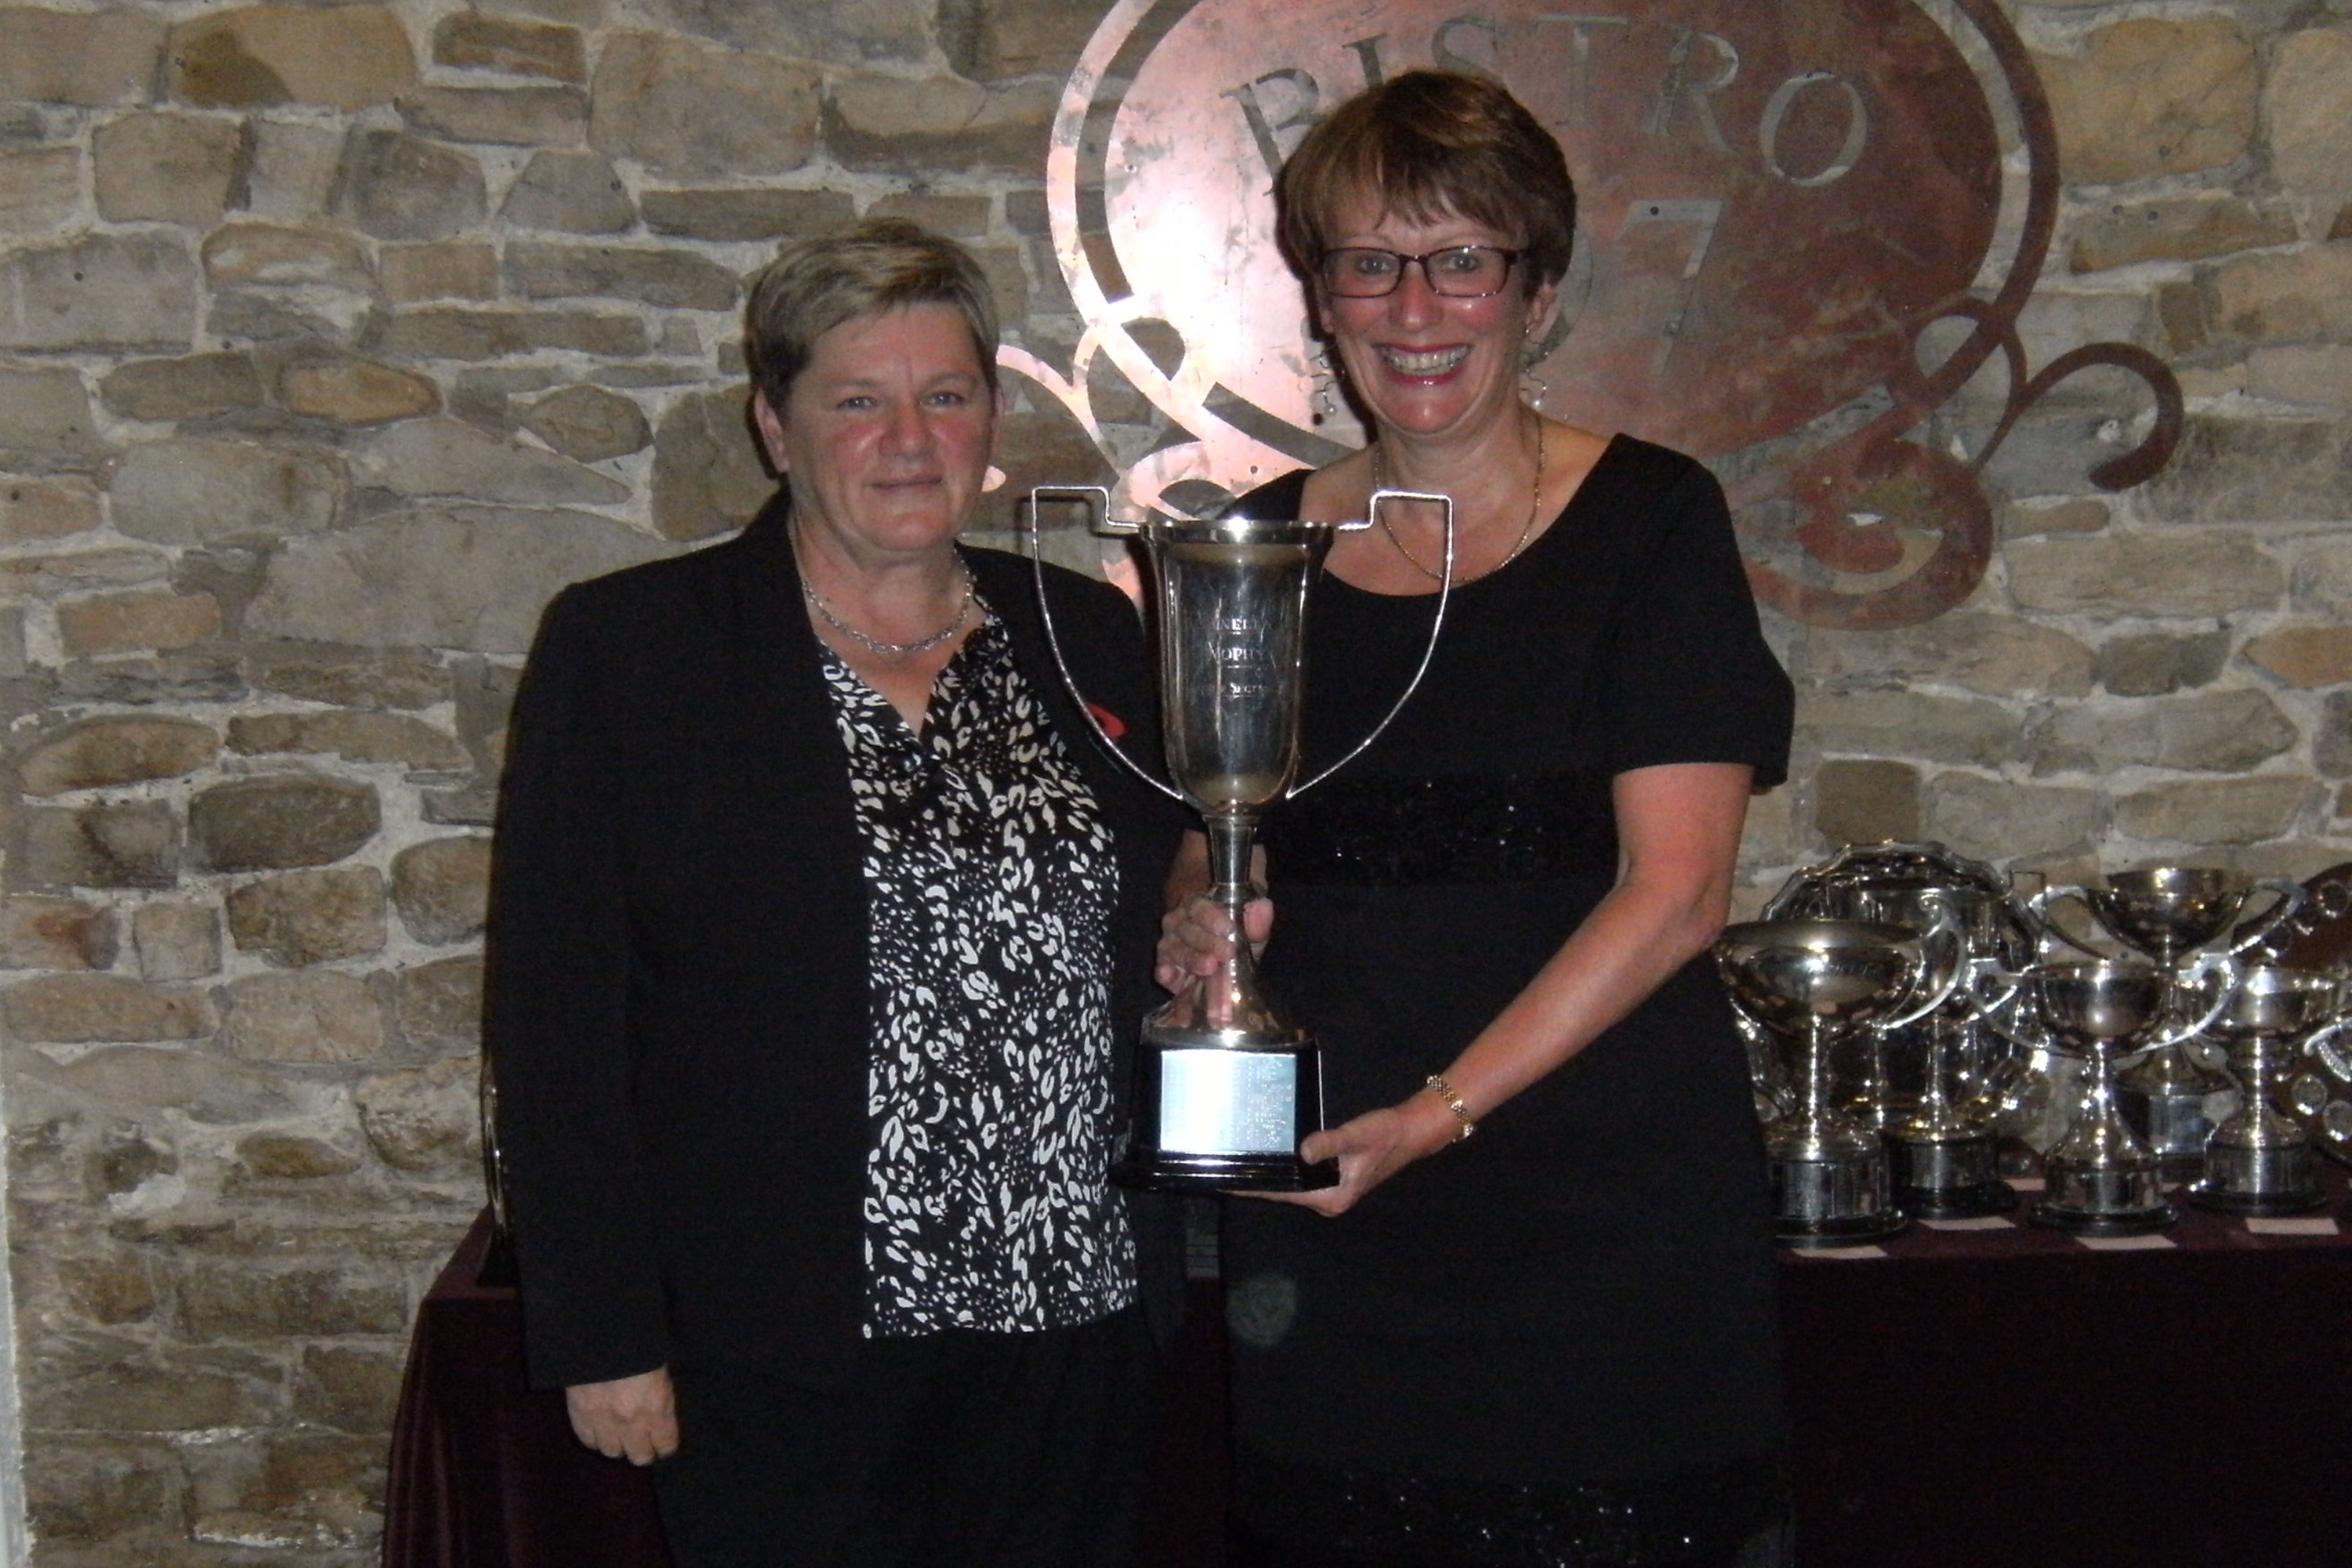 Joanne Allen - Towneley Trophy